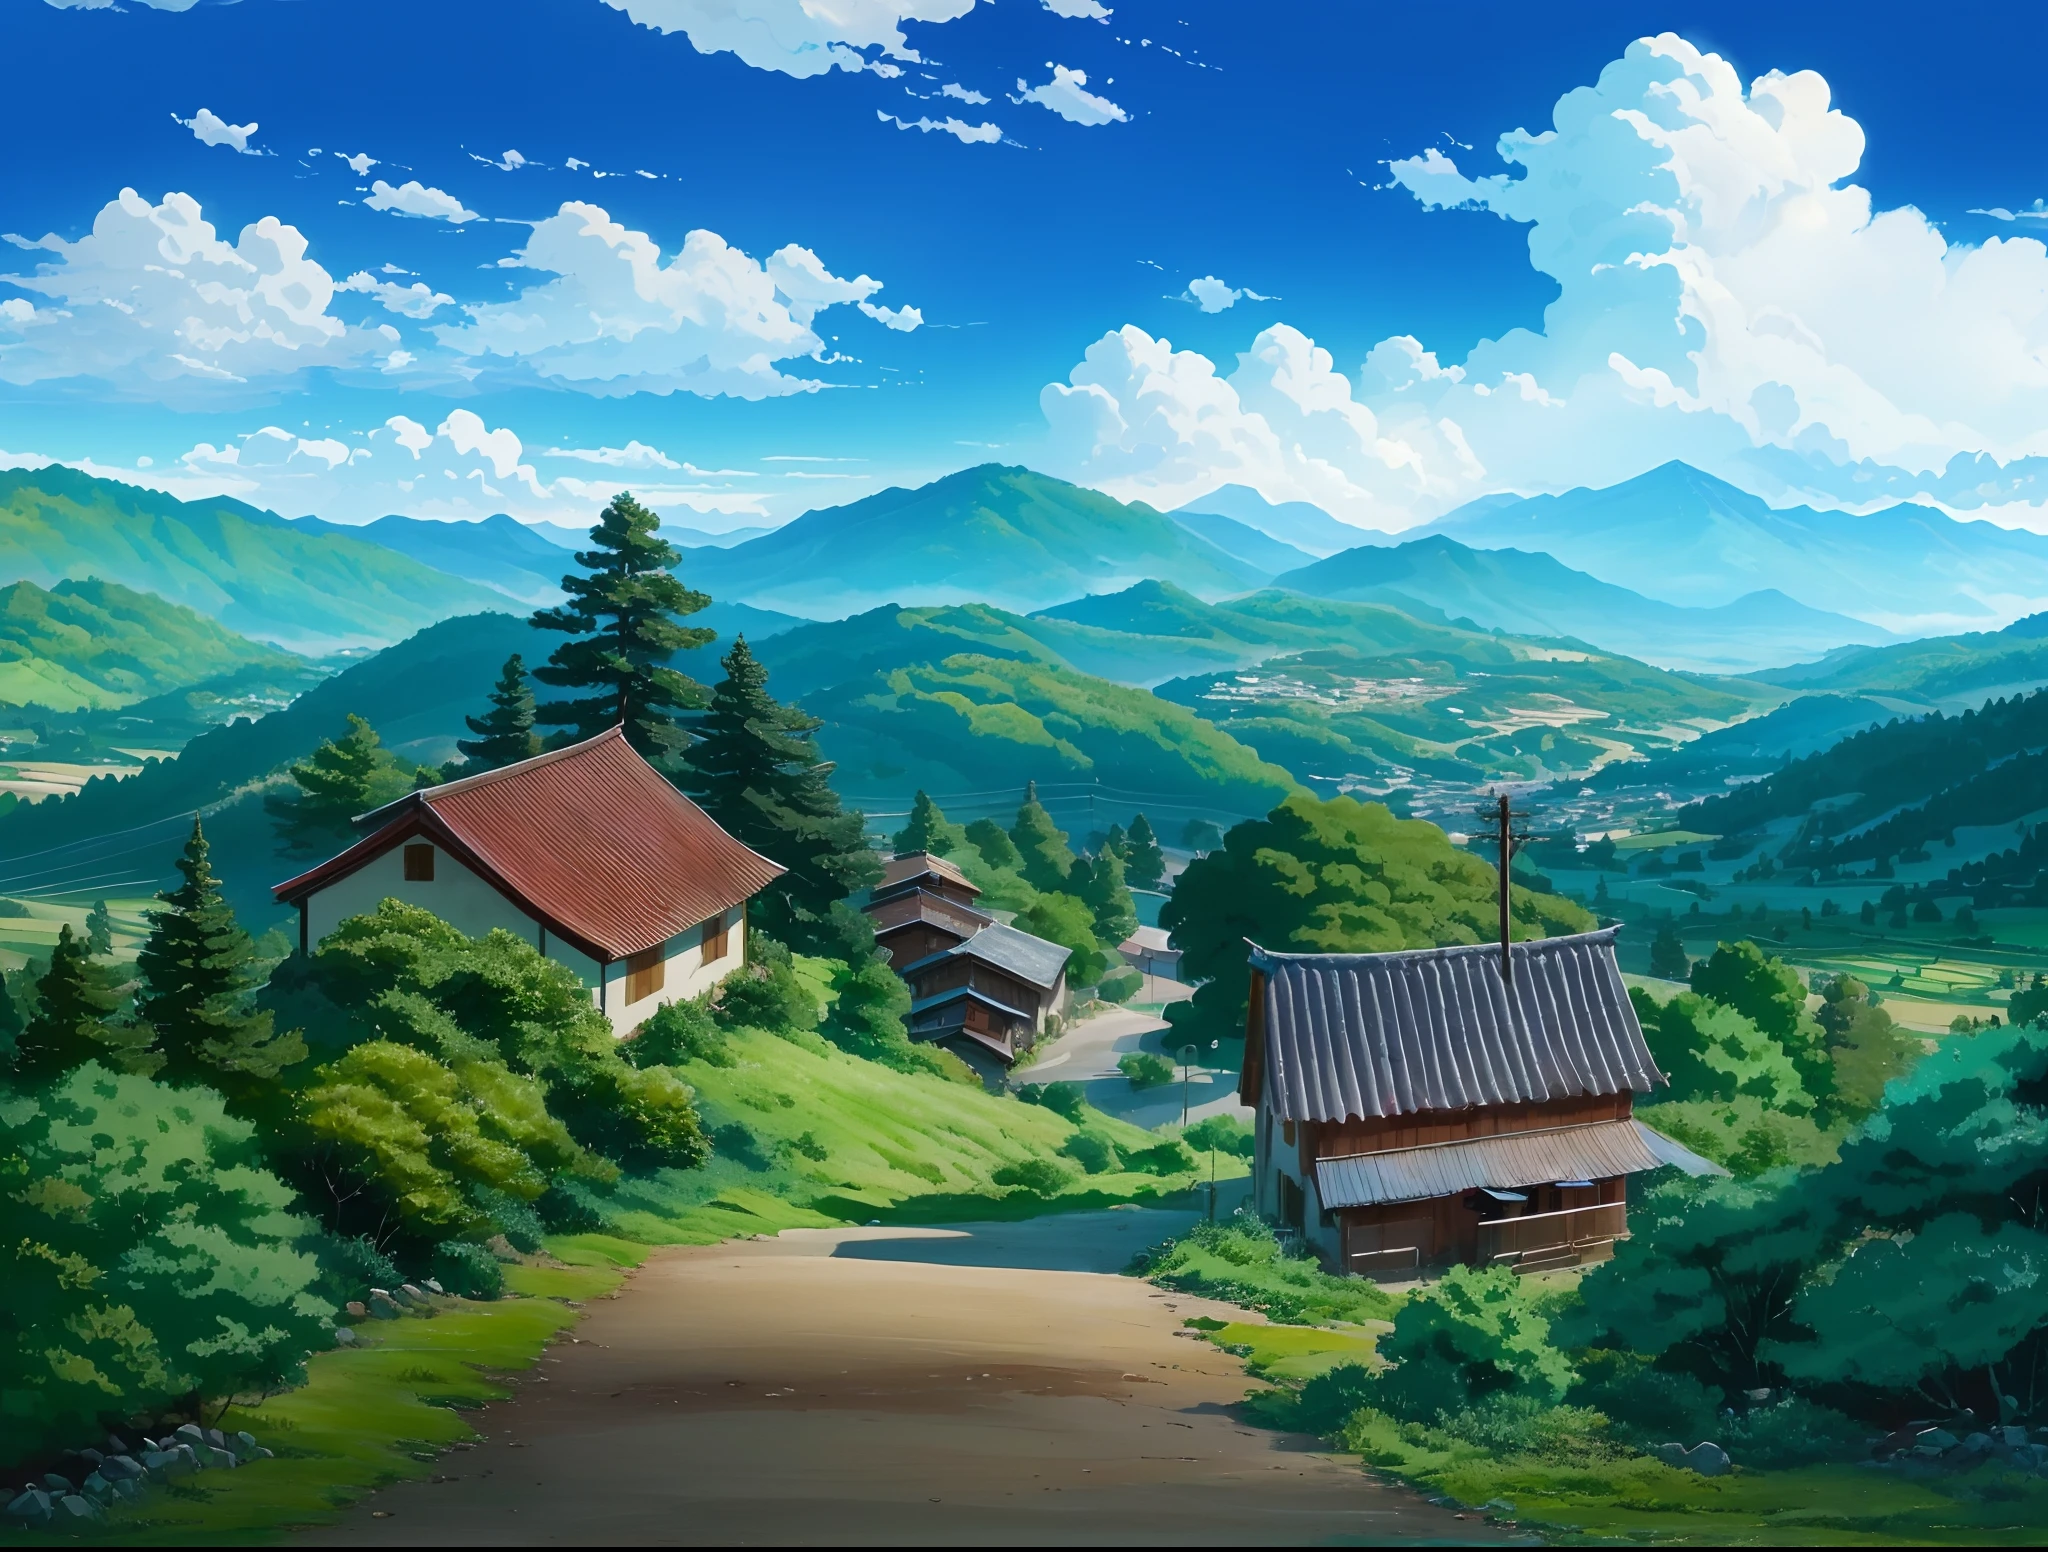 Beautiful anime scenery wallpaper by LouiDev on DeviantArt